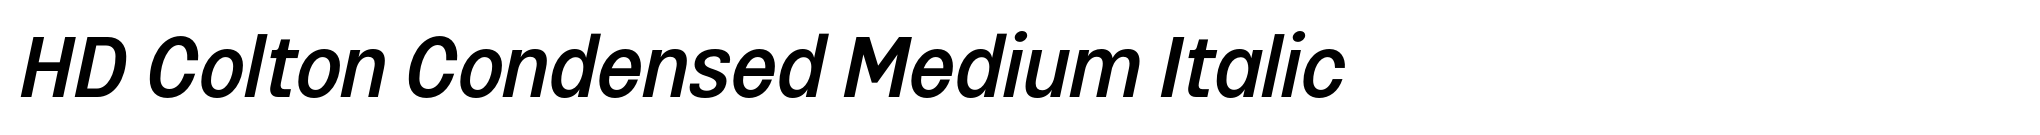 HD Colton Condensed Medium Italic image